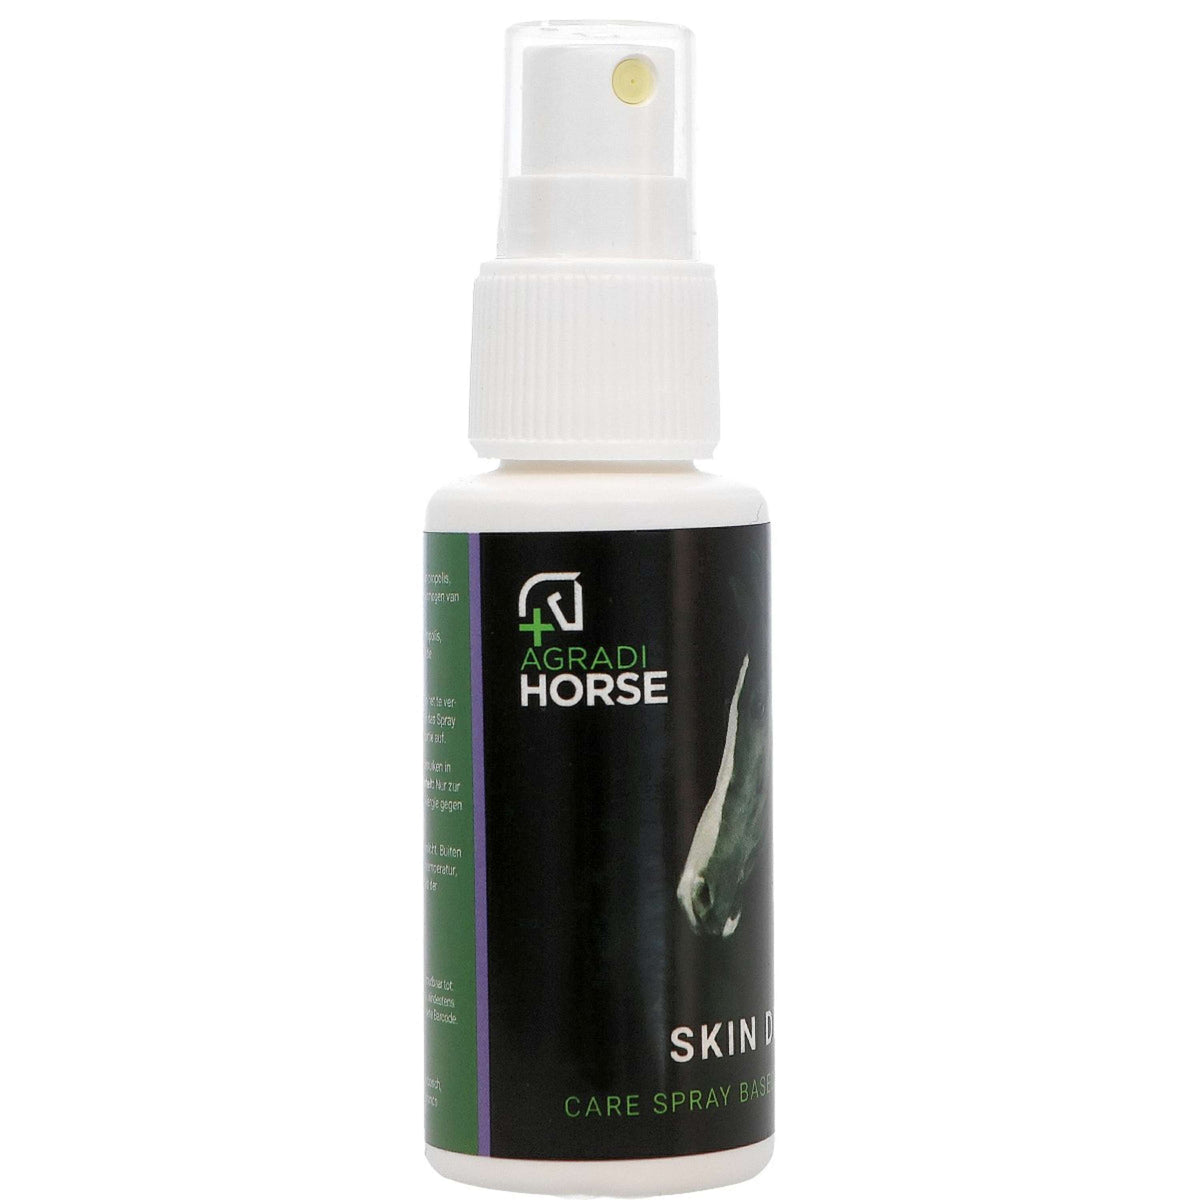 Agradi Horse Skin Derm Spray Propolis Honig